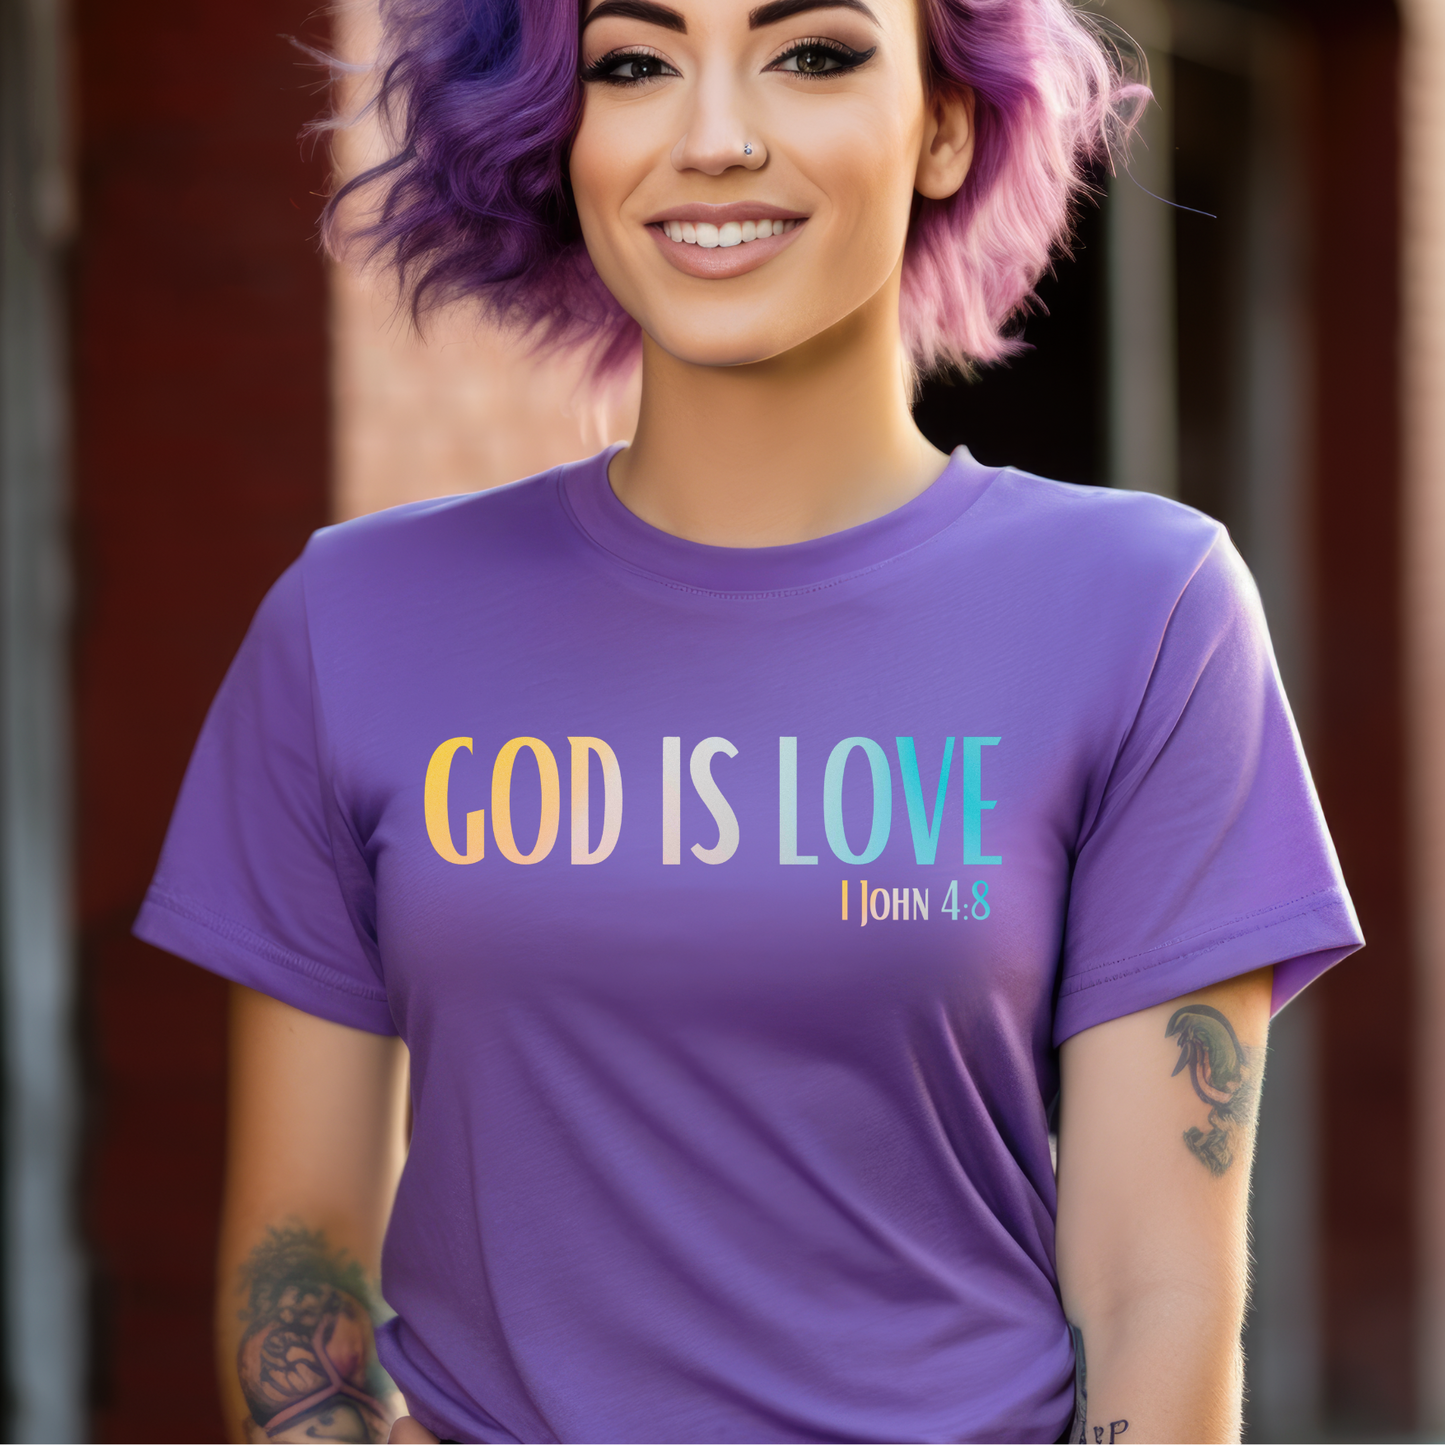 1 John 4:8 God is Love, Christian Garment-Dyed T-shirt for men and women grape purple